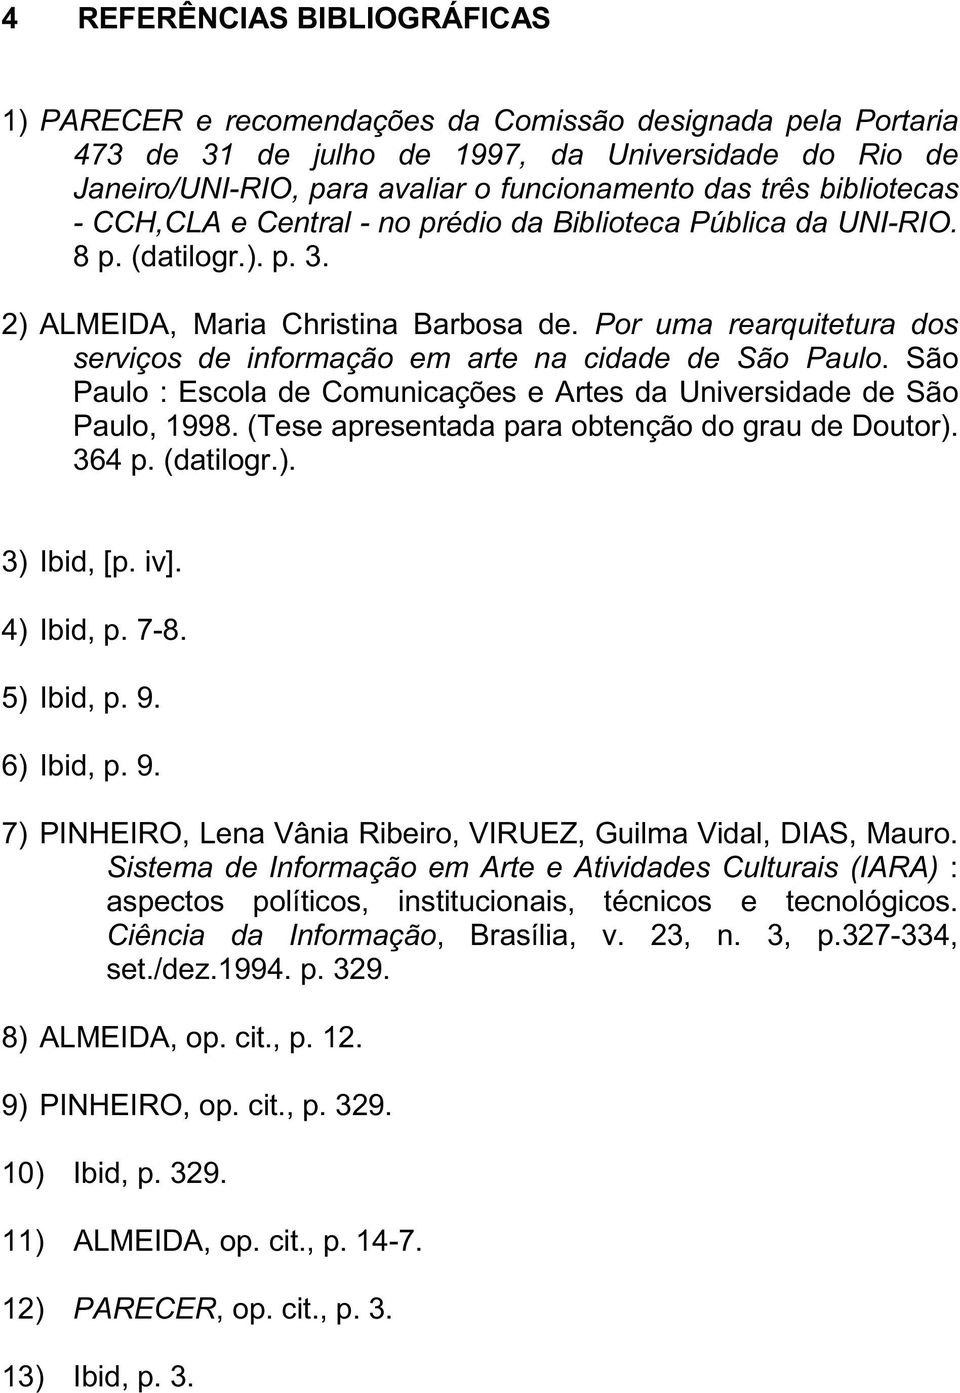 Por uma rearquitetura dos serviços de informação em arte na cidade de São Paulo. São Paulo : Escola de Comunicações e Artes da Universidade de São Paulo, 1998.